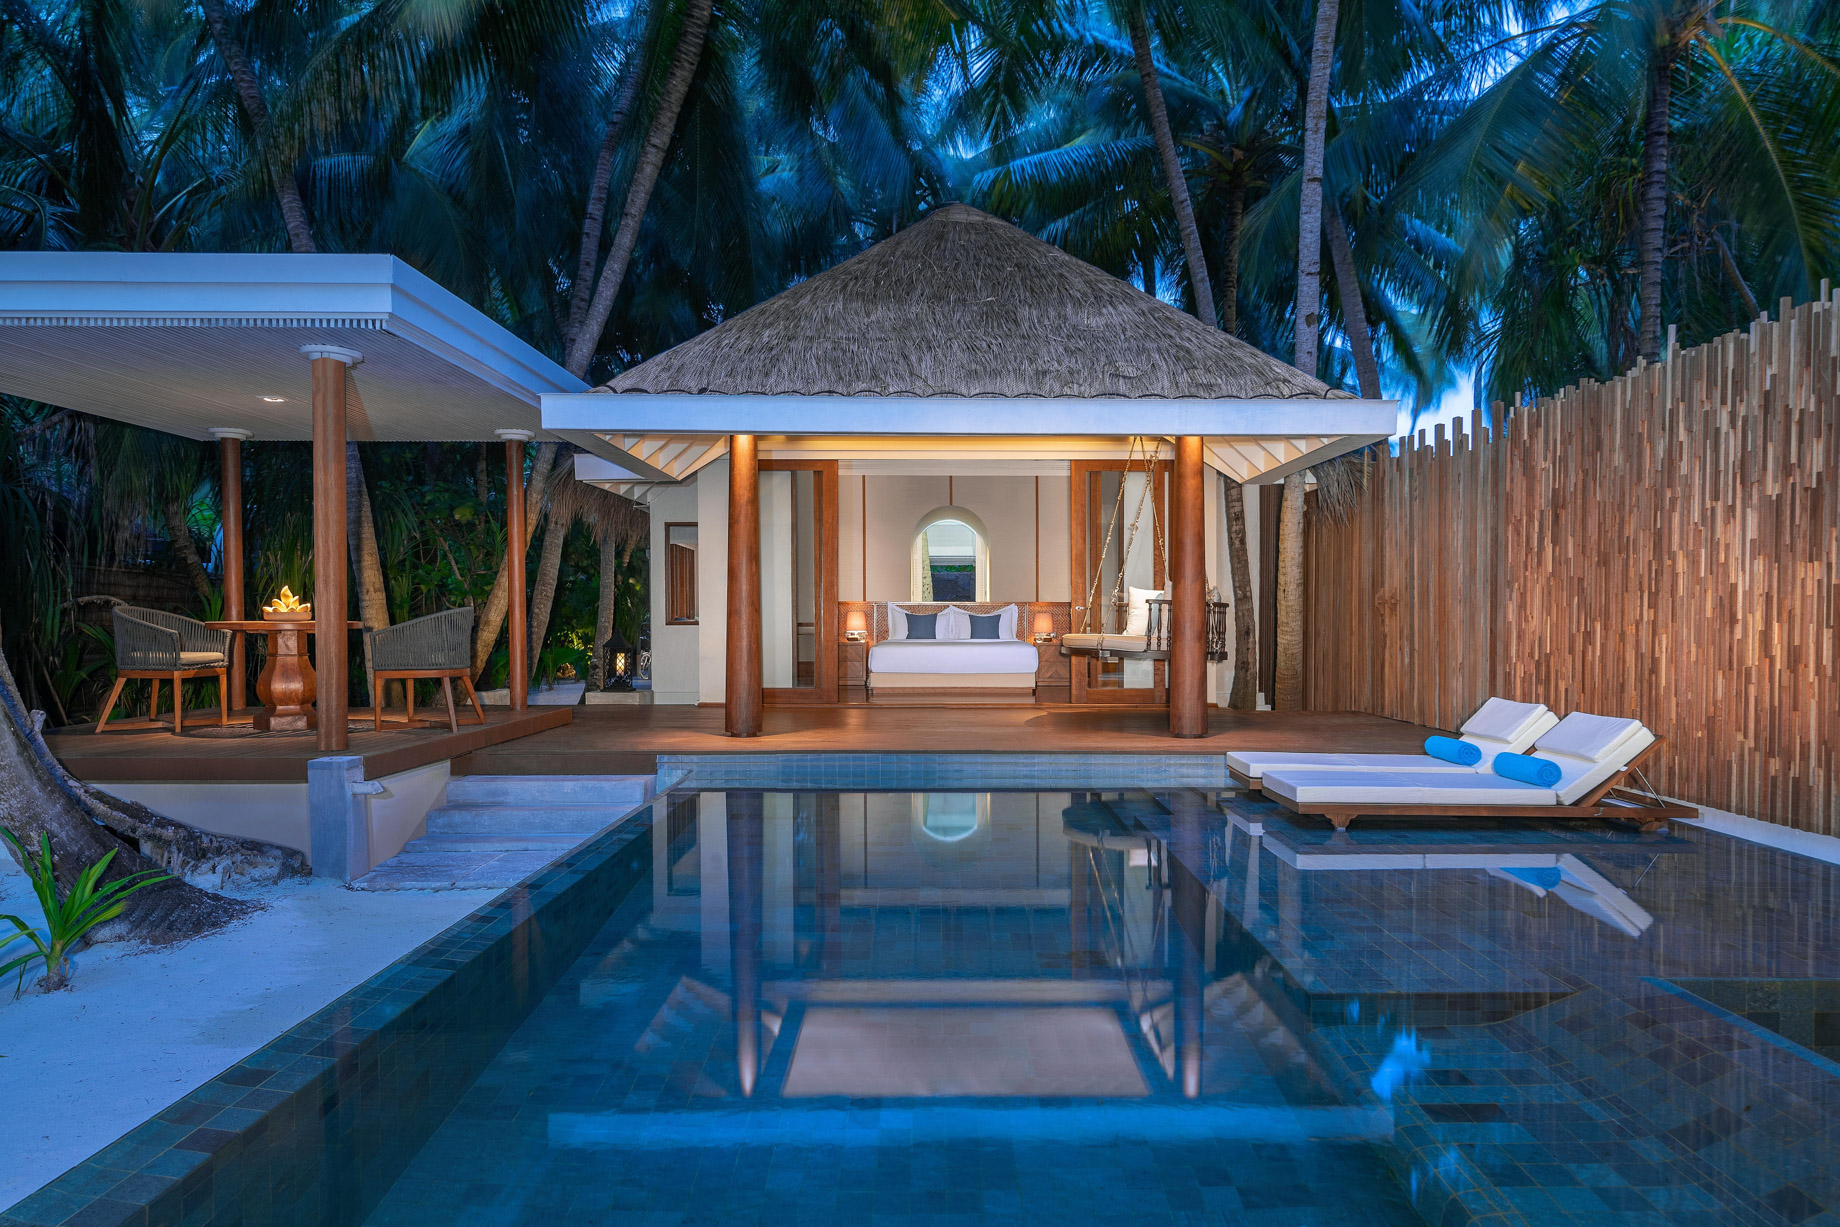 Anantara Kihavah Maldives Villas Resort – Baa Atoll, Maldives – Beach Pool Residence Pool Deck Night